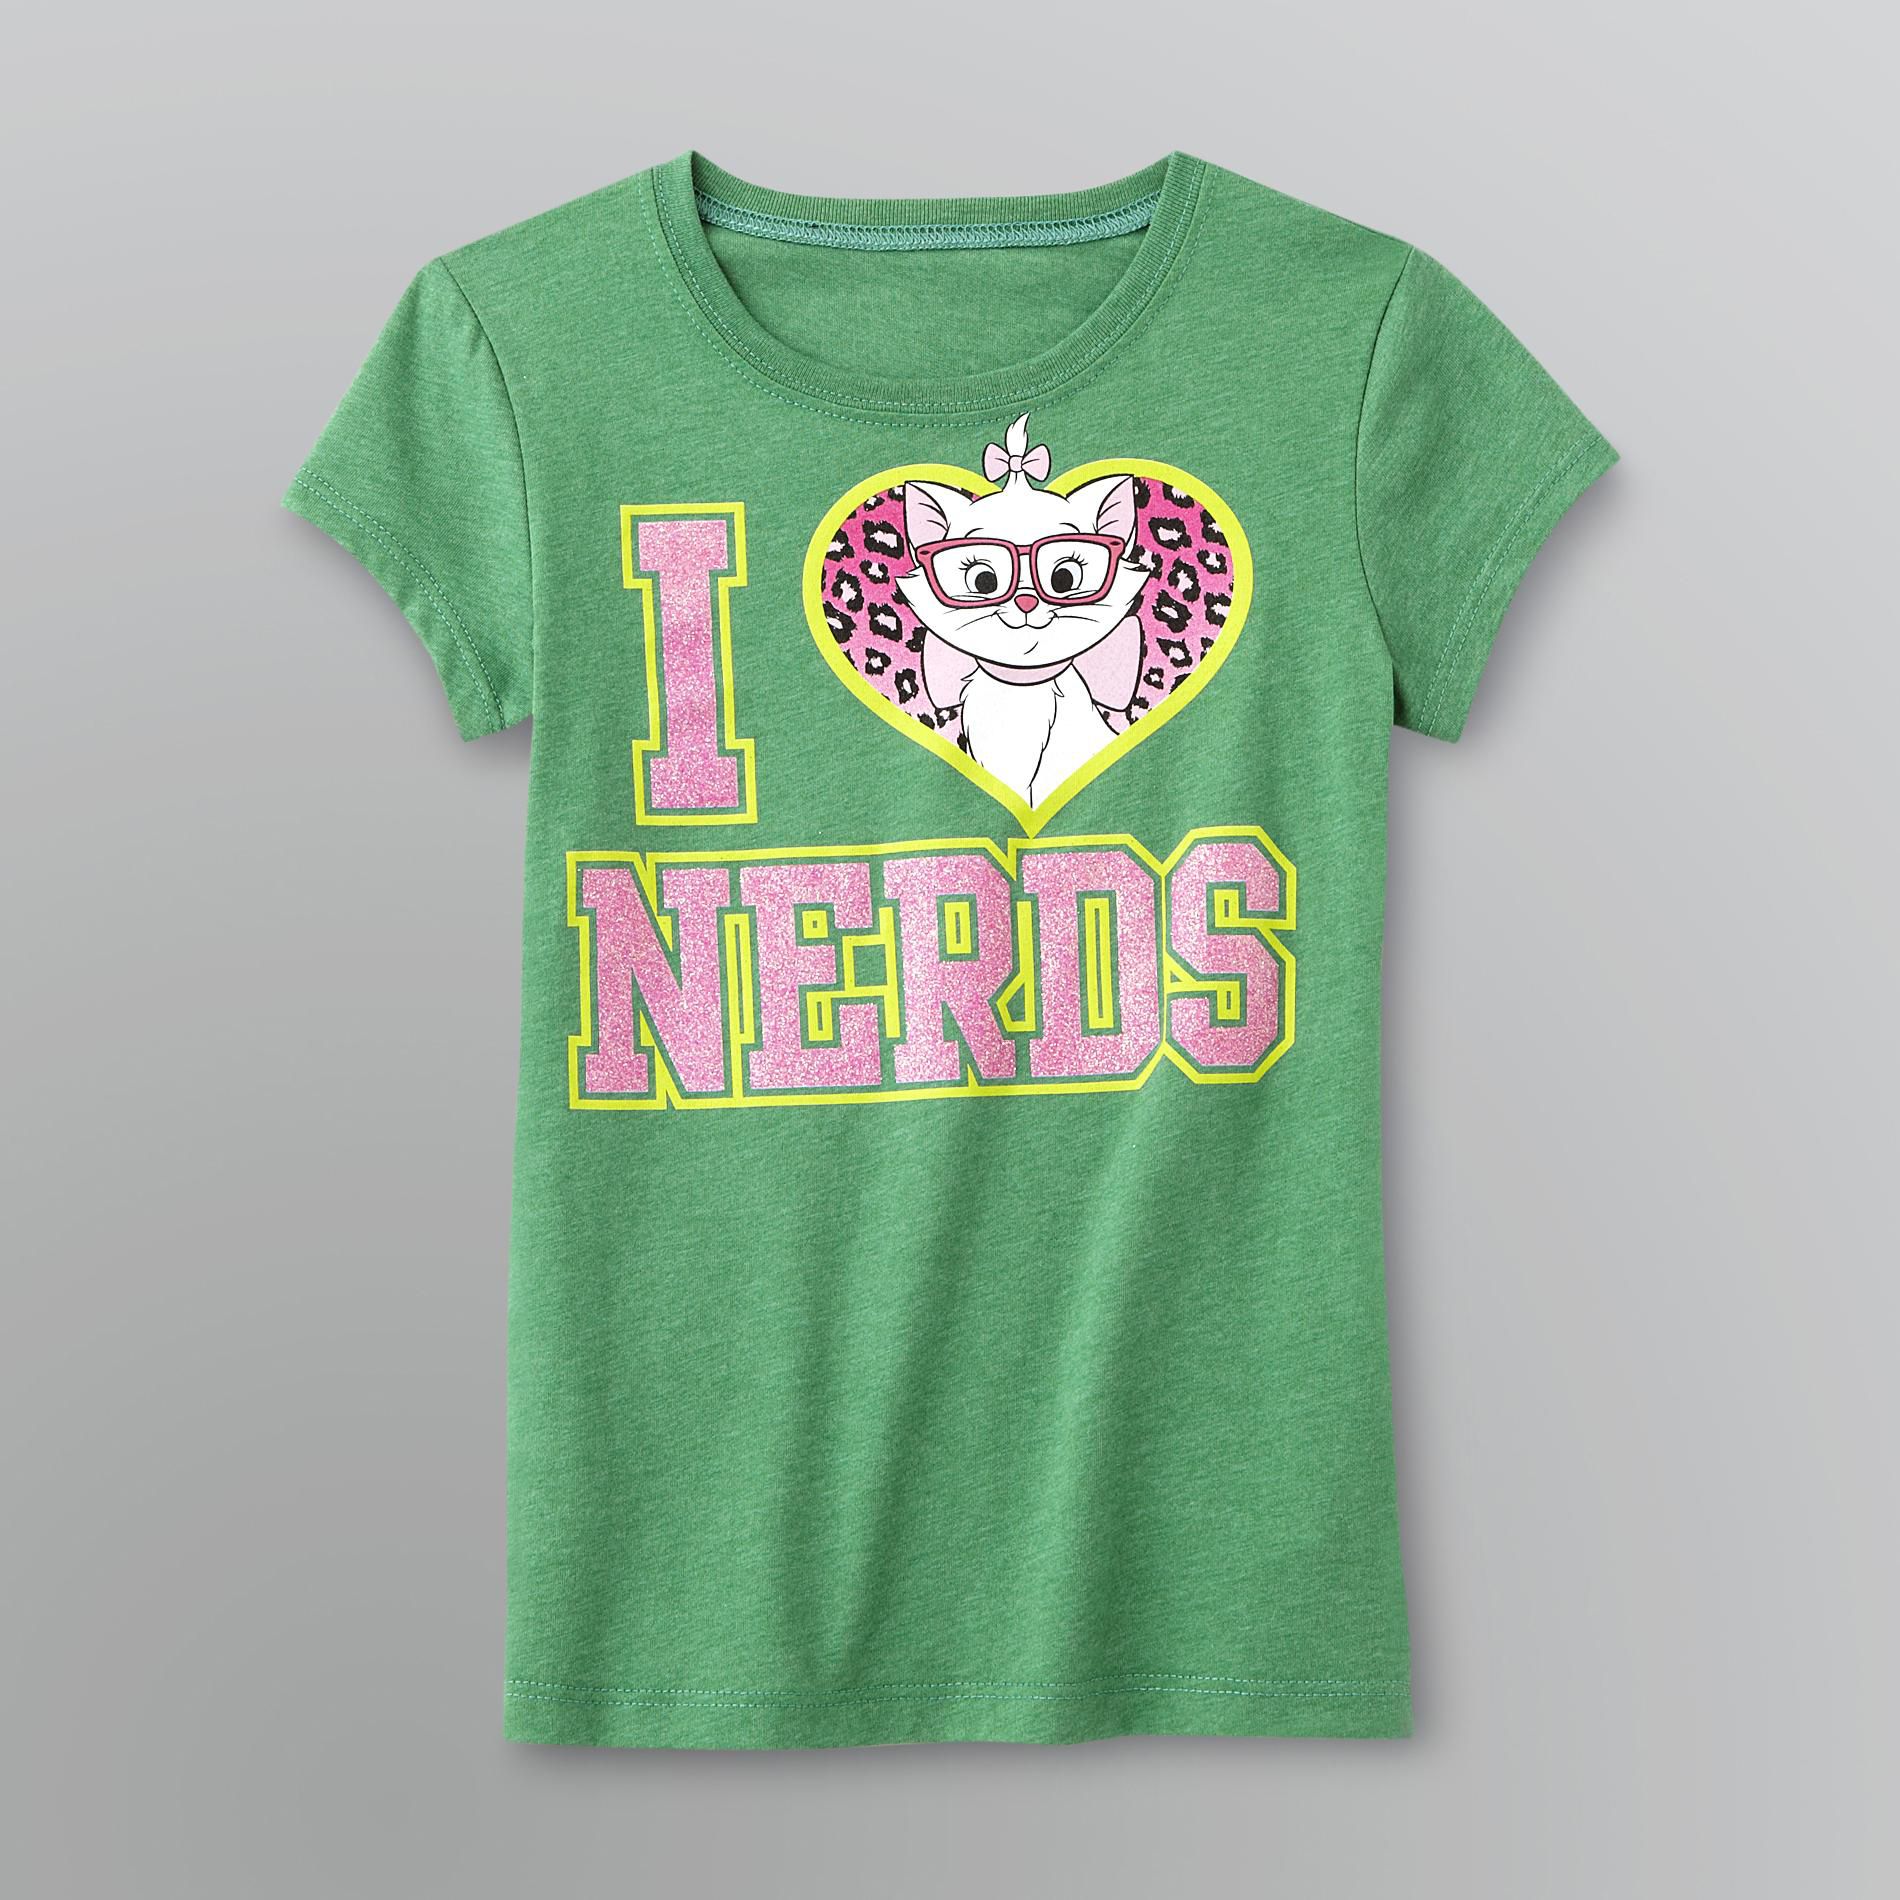 Disney Aristocats Girl's Glitter T-Shirt - Love Nerds